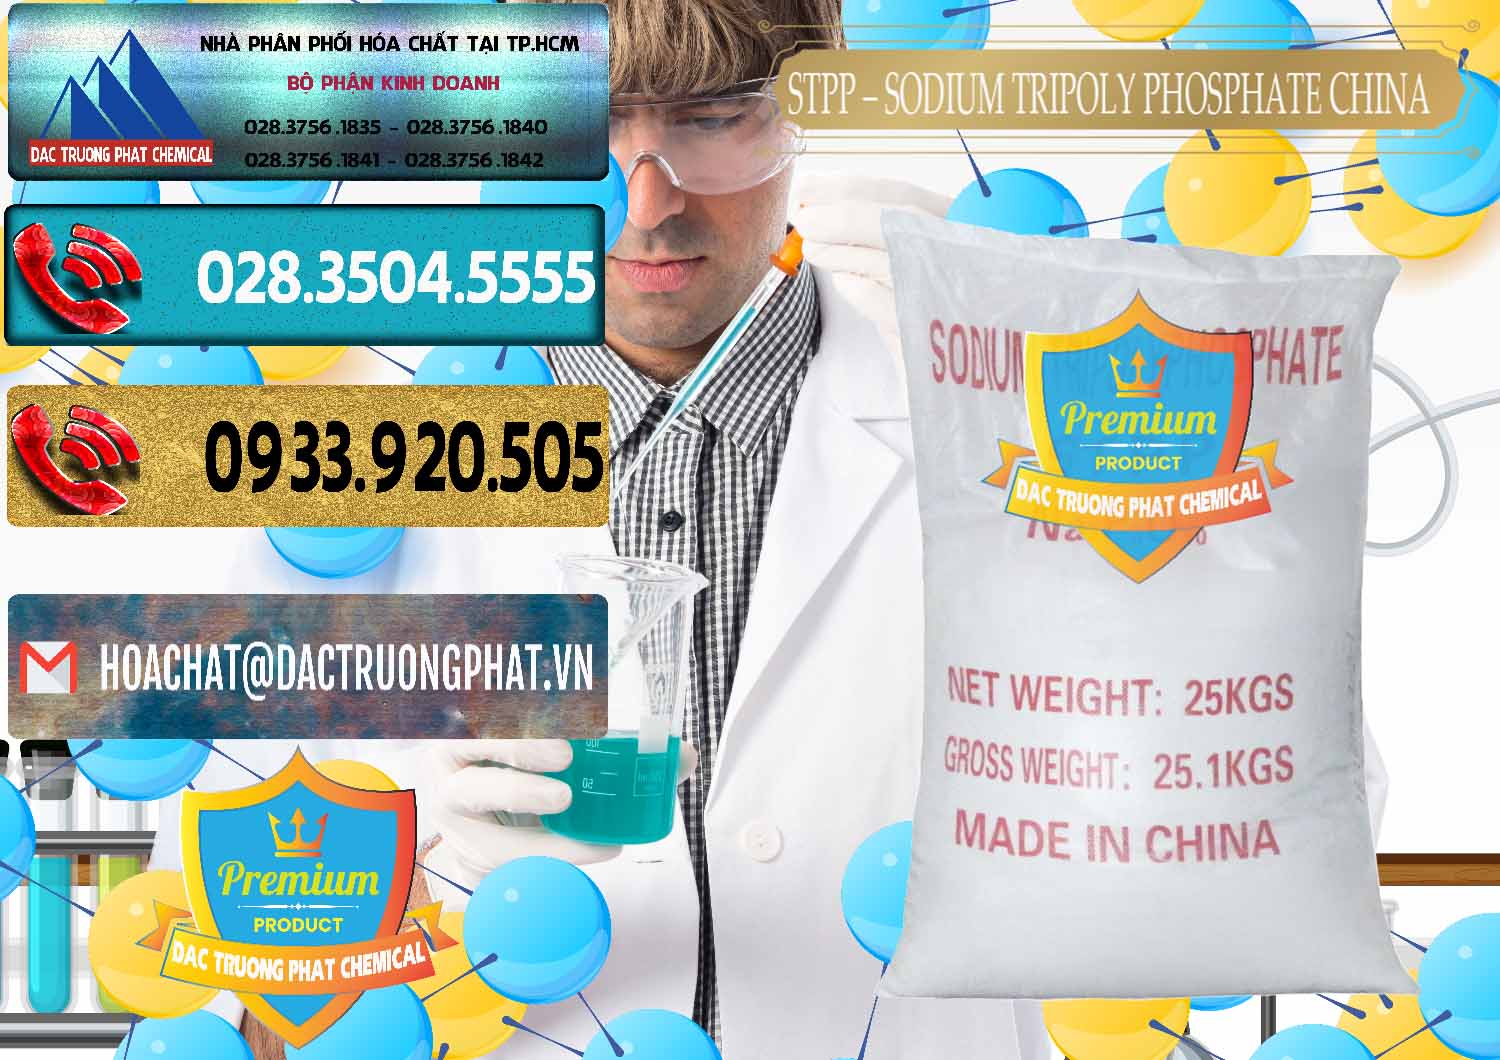 Đơn vị kinh doanh ( bán ) Sodium Tripoly Phosphate - STPP 96% Chữ Đỏ Trung Quốc China - 0155 - Cung cấp ( phân phối ) hóa chất tại TP.HCM - hoachatdetnhuom.com